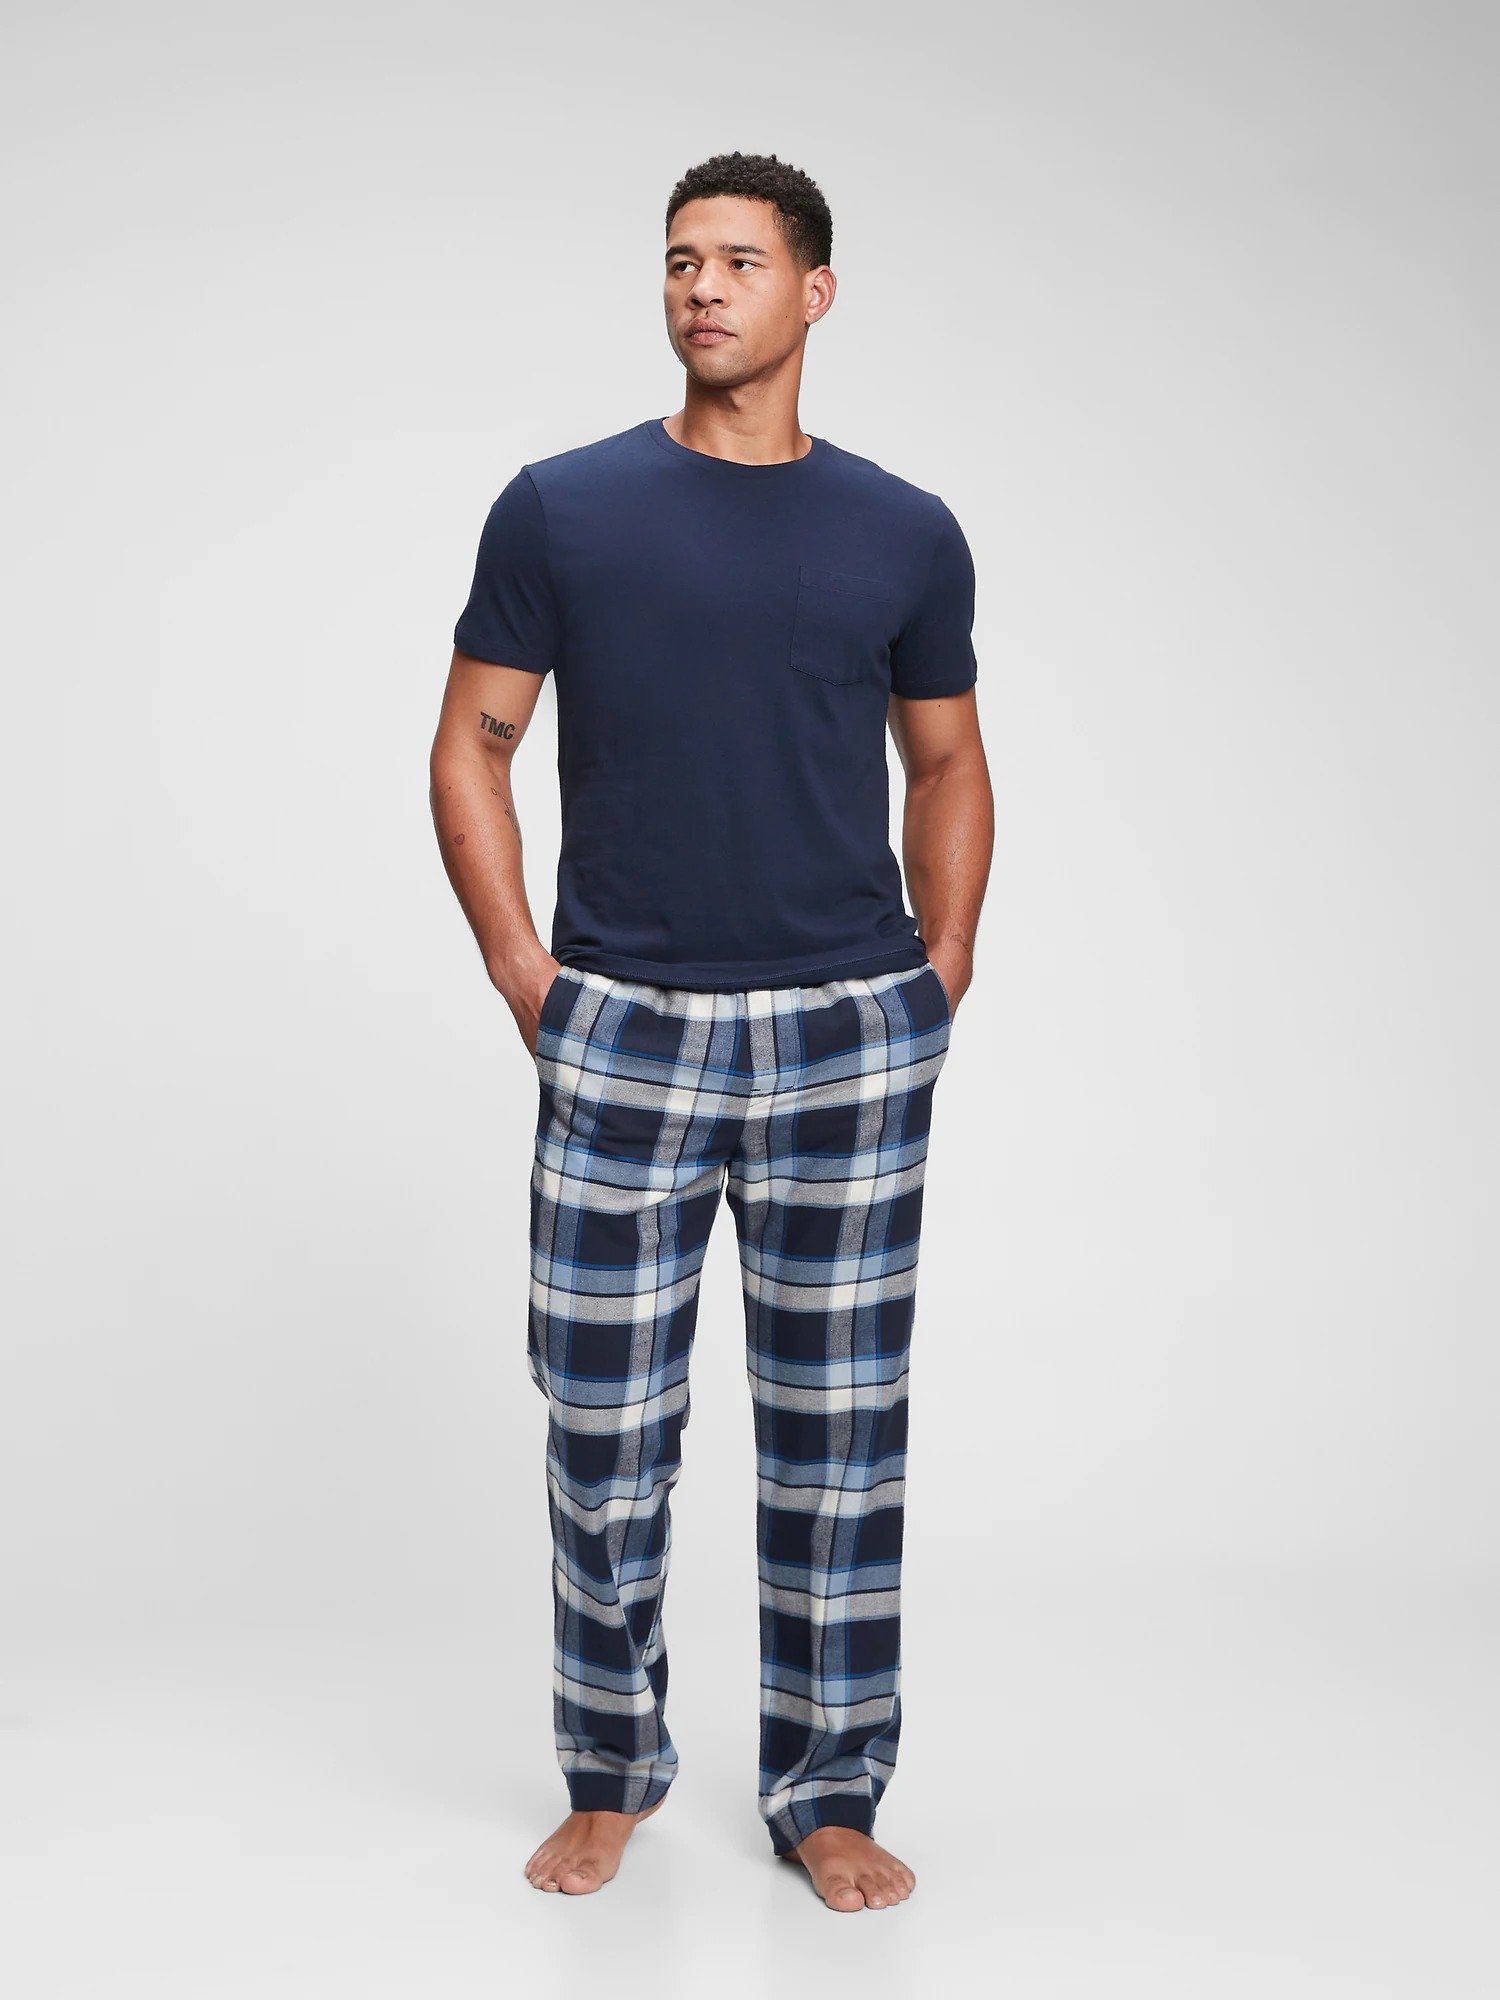 Flannel Ekose Pijama Altı product image